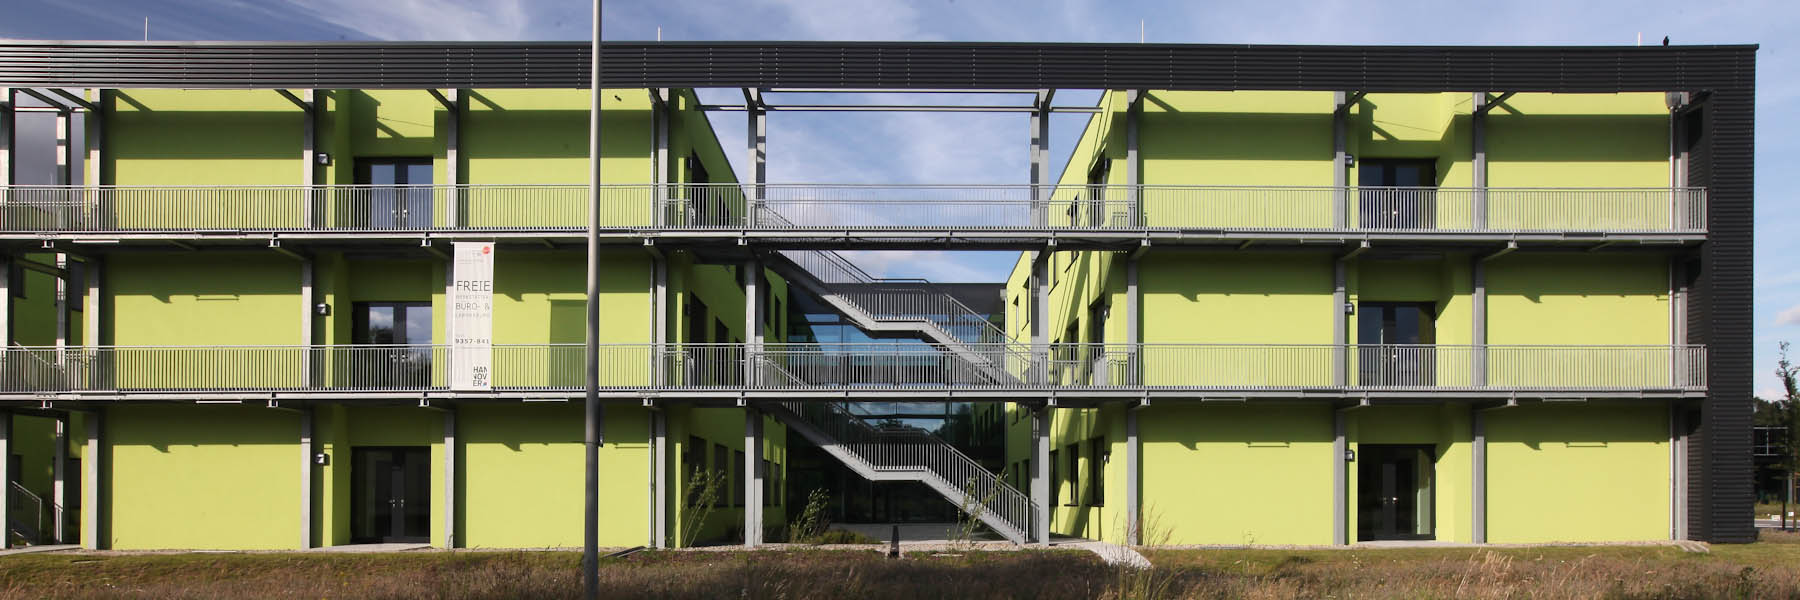 Energetisches Konzept Technologiezentrum, Hannover-Marienwerder 